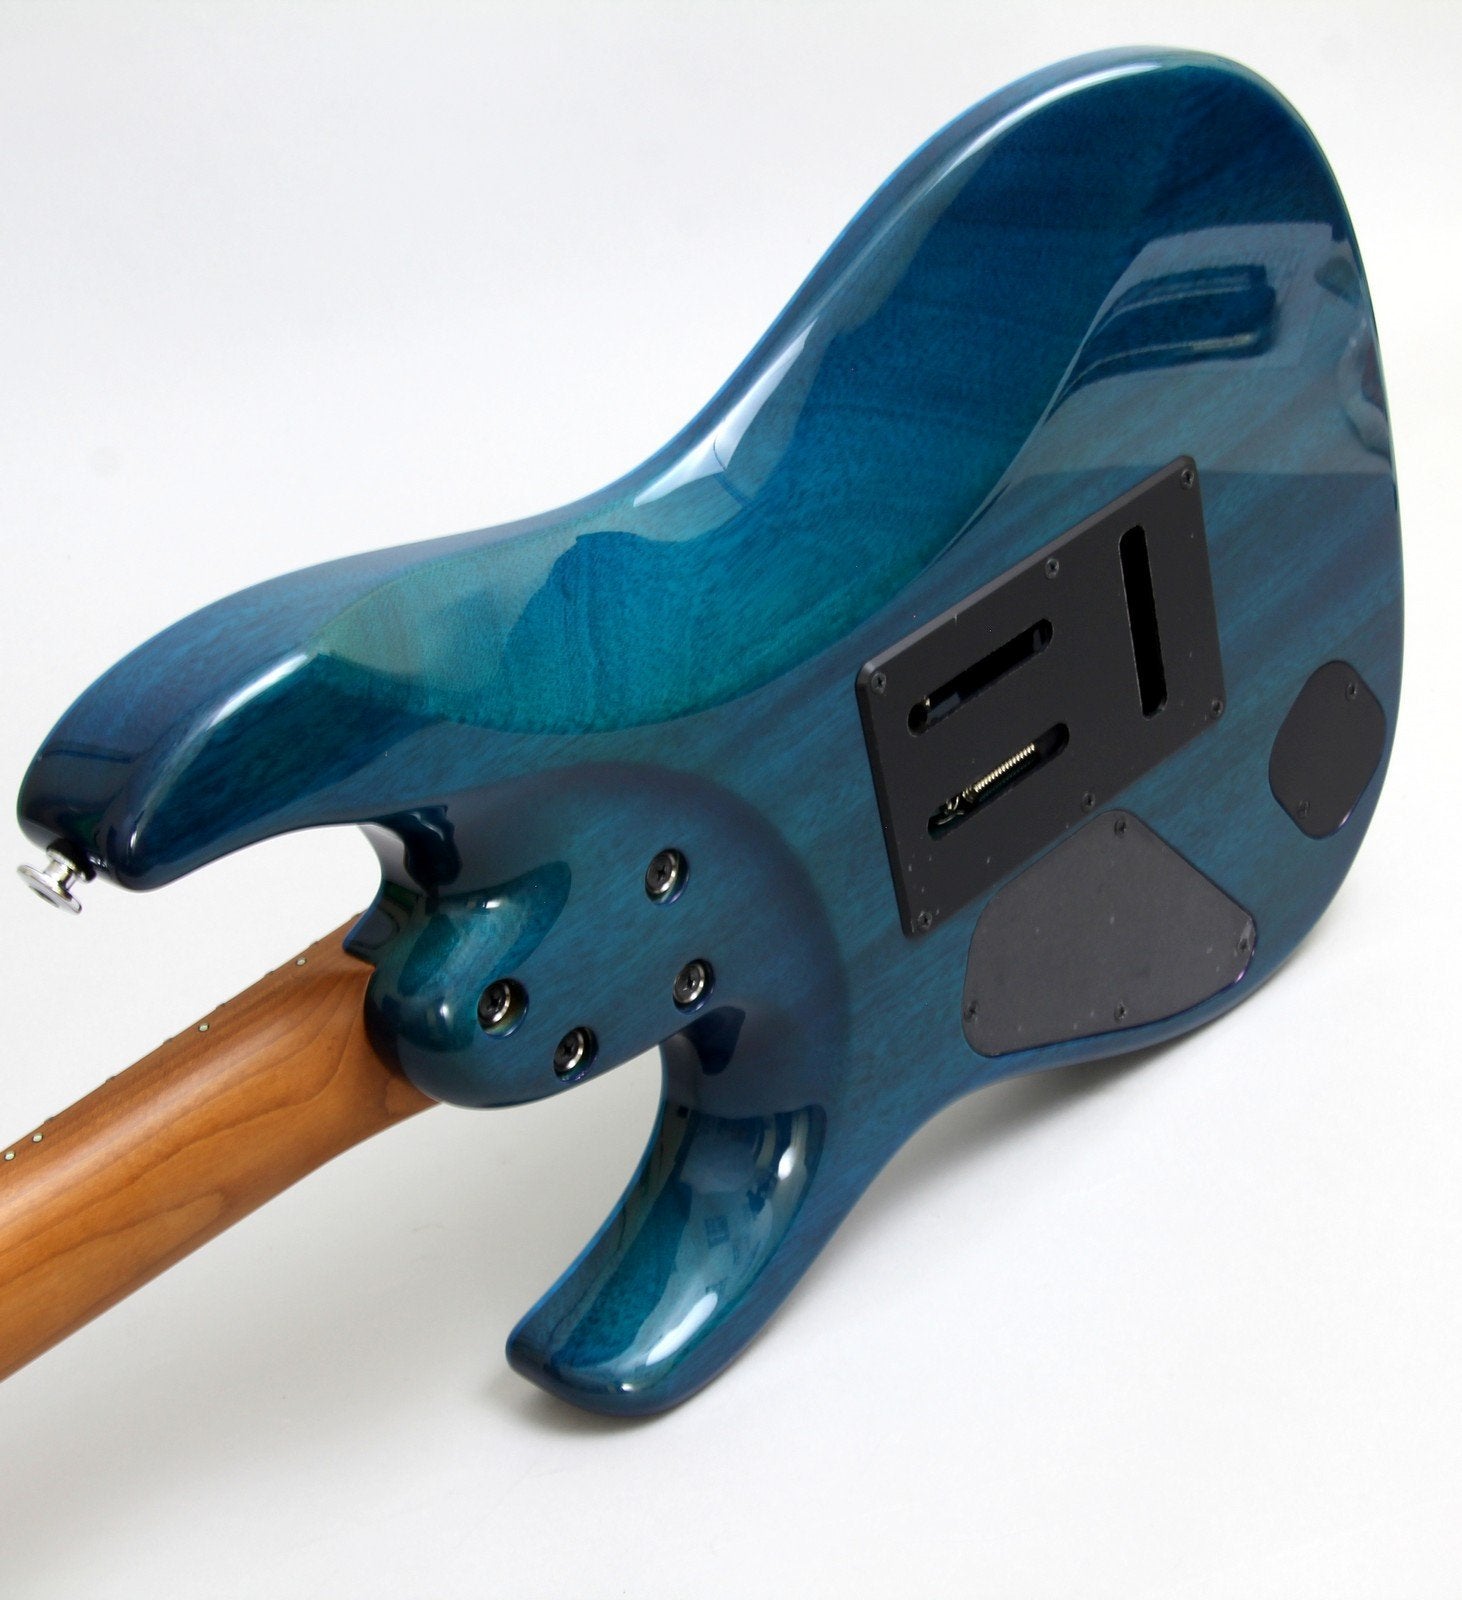 Ibanez MM1 Martin Miller Signature Guitar | Transparent Aqua Blue